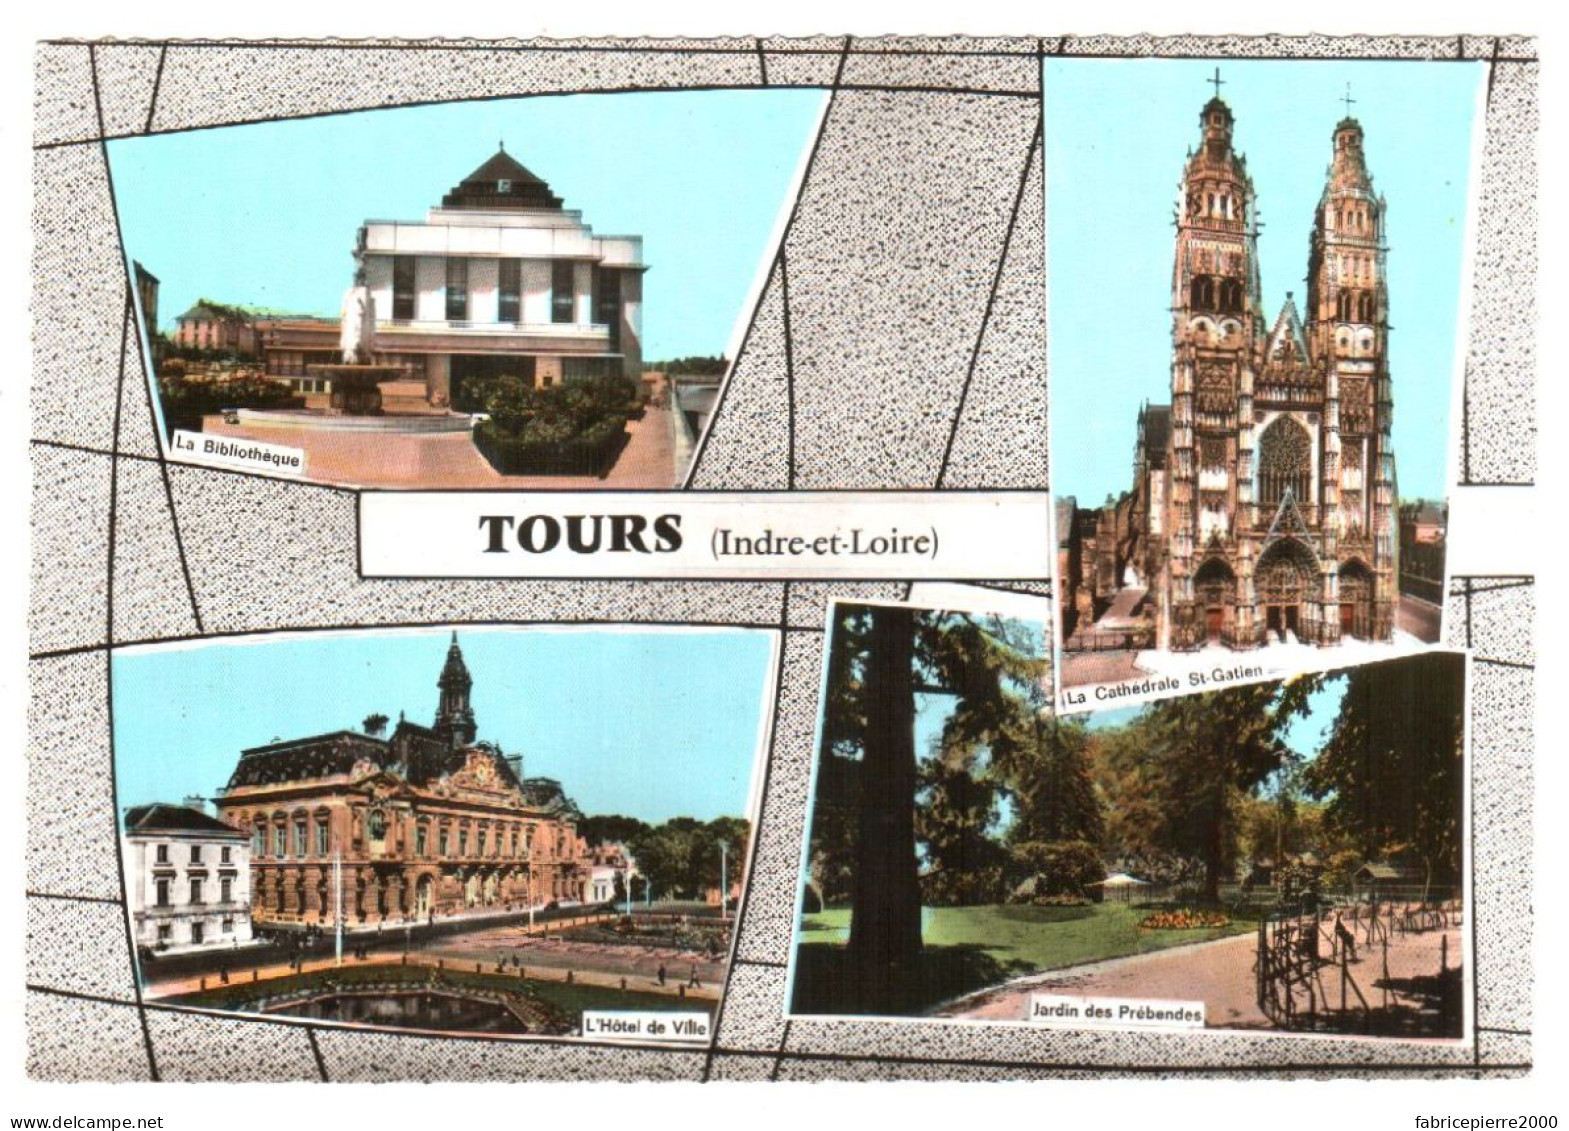 CPSM 37 (Indre-et-Loire) Tours - Bibliothèque, Jardin Des Prébandes, Cathédrale Saint-Gatien, Hôtel-de-Ville TBE Couleur - Bibliothèques